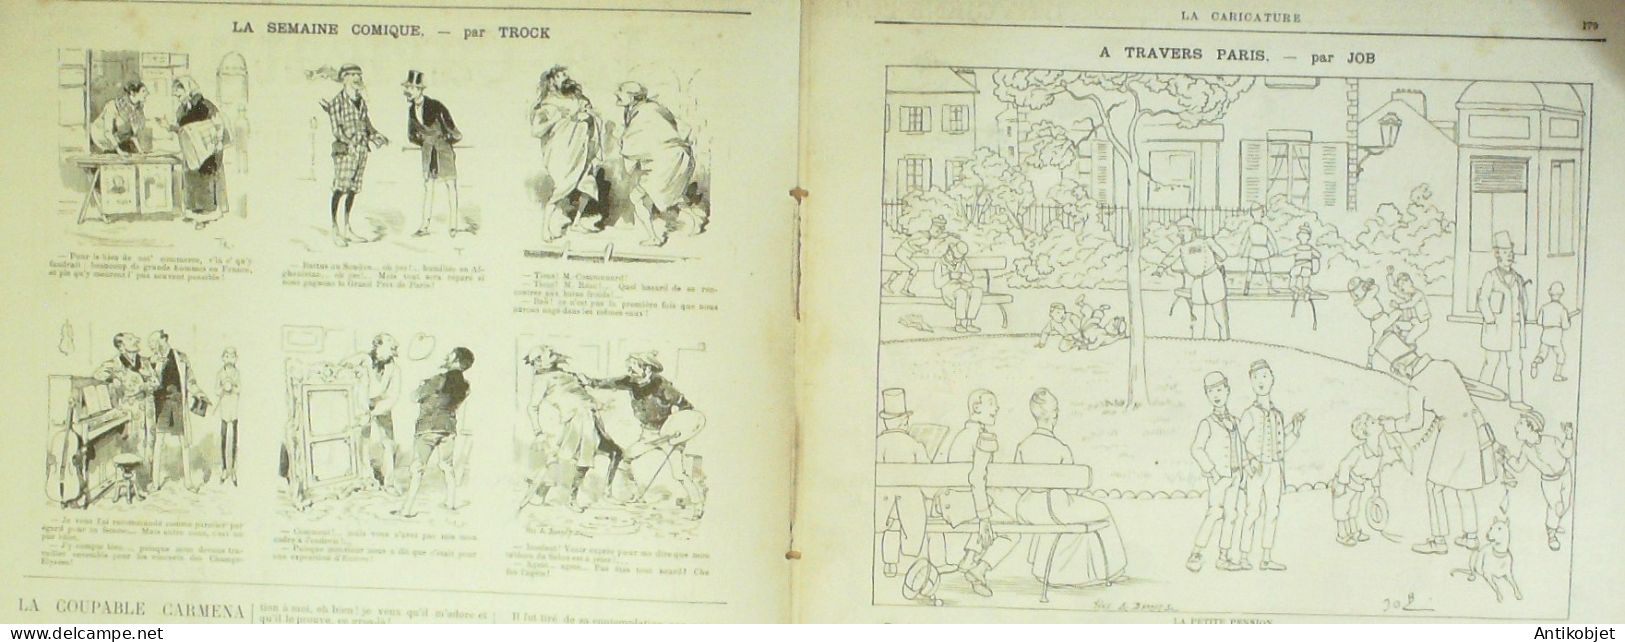 La Caricature 1885 N°284 Civils & Militaires Caran D'Ache Hygiène Trock Job - Revues Anciennes - Avant 1900